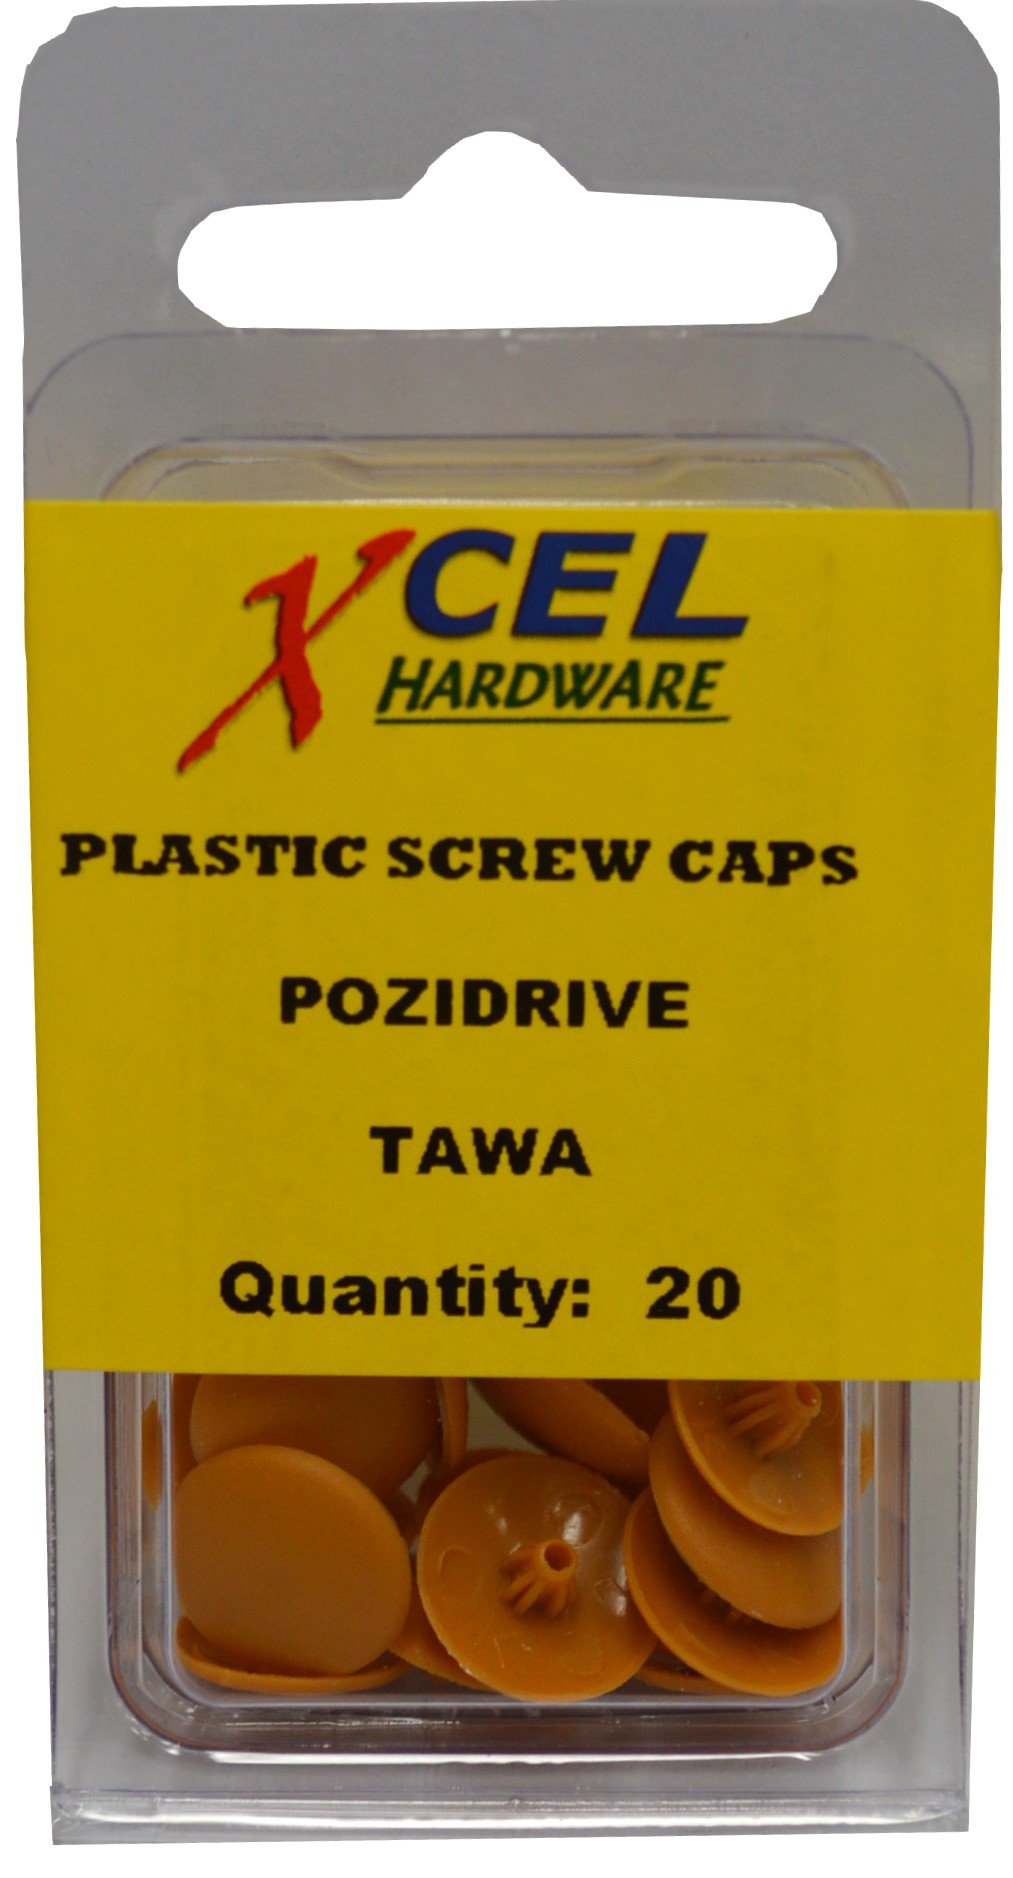 Plastic Screw Caps - Pozi 20-pce Tawa Prepax